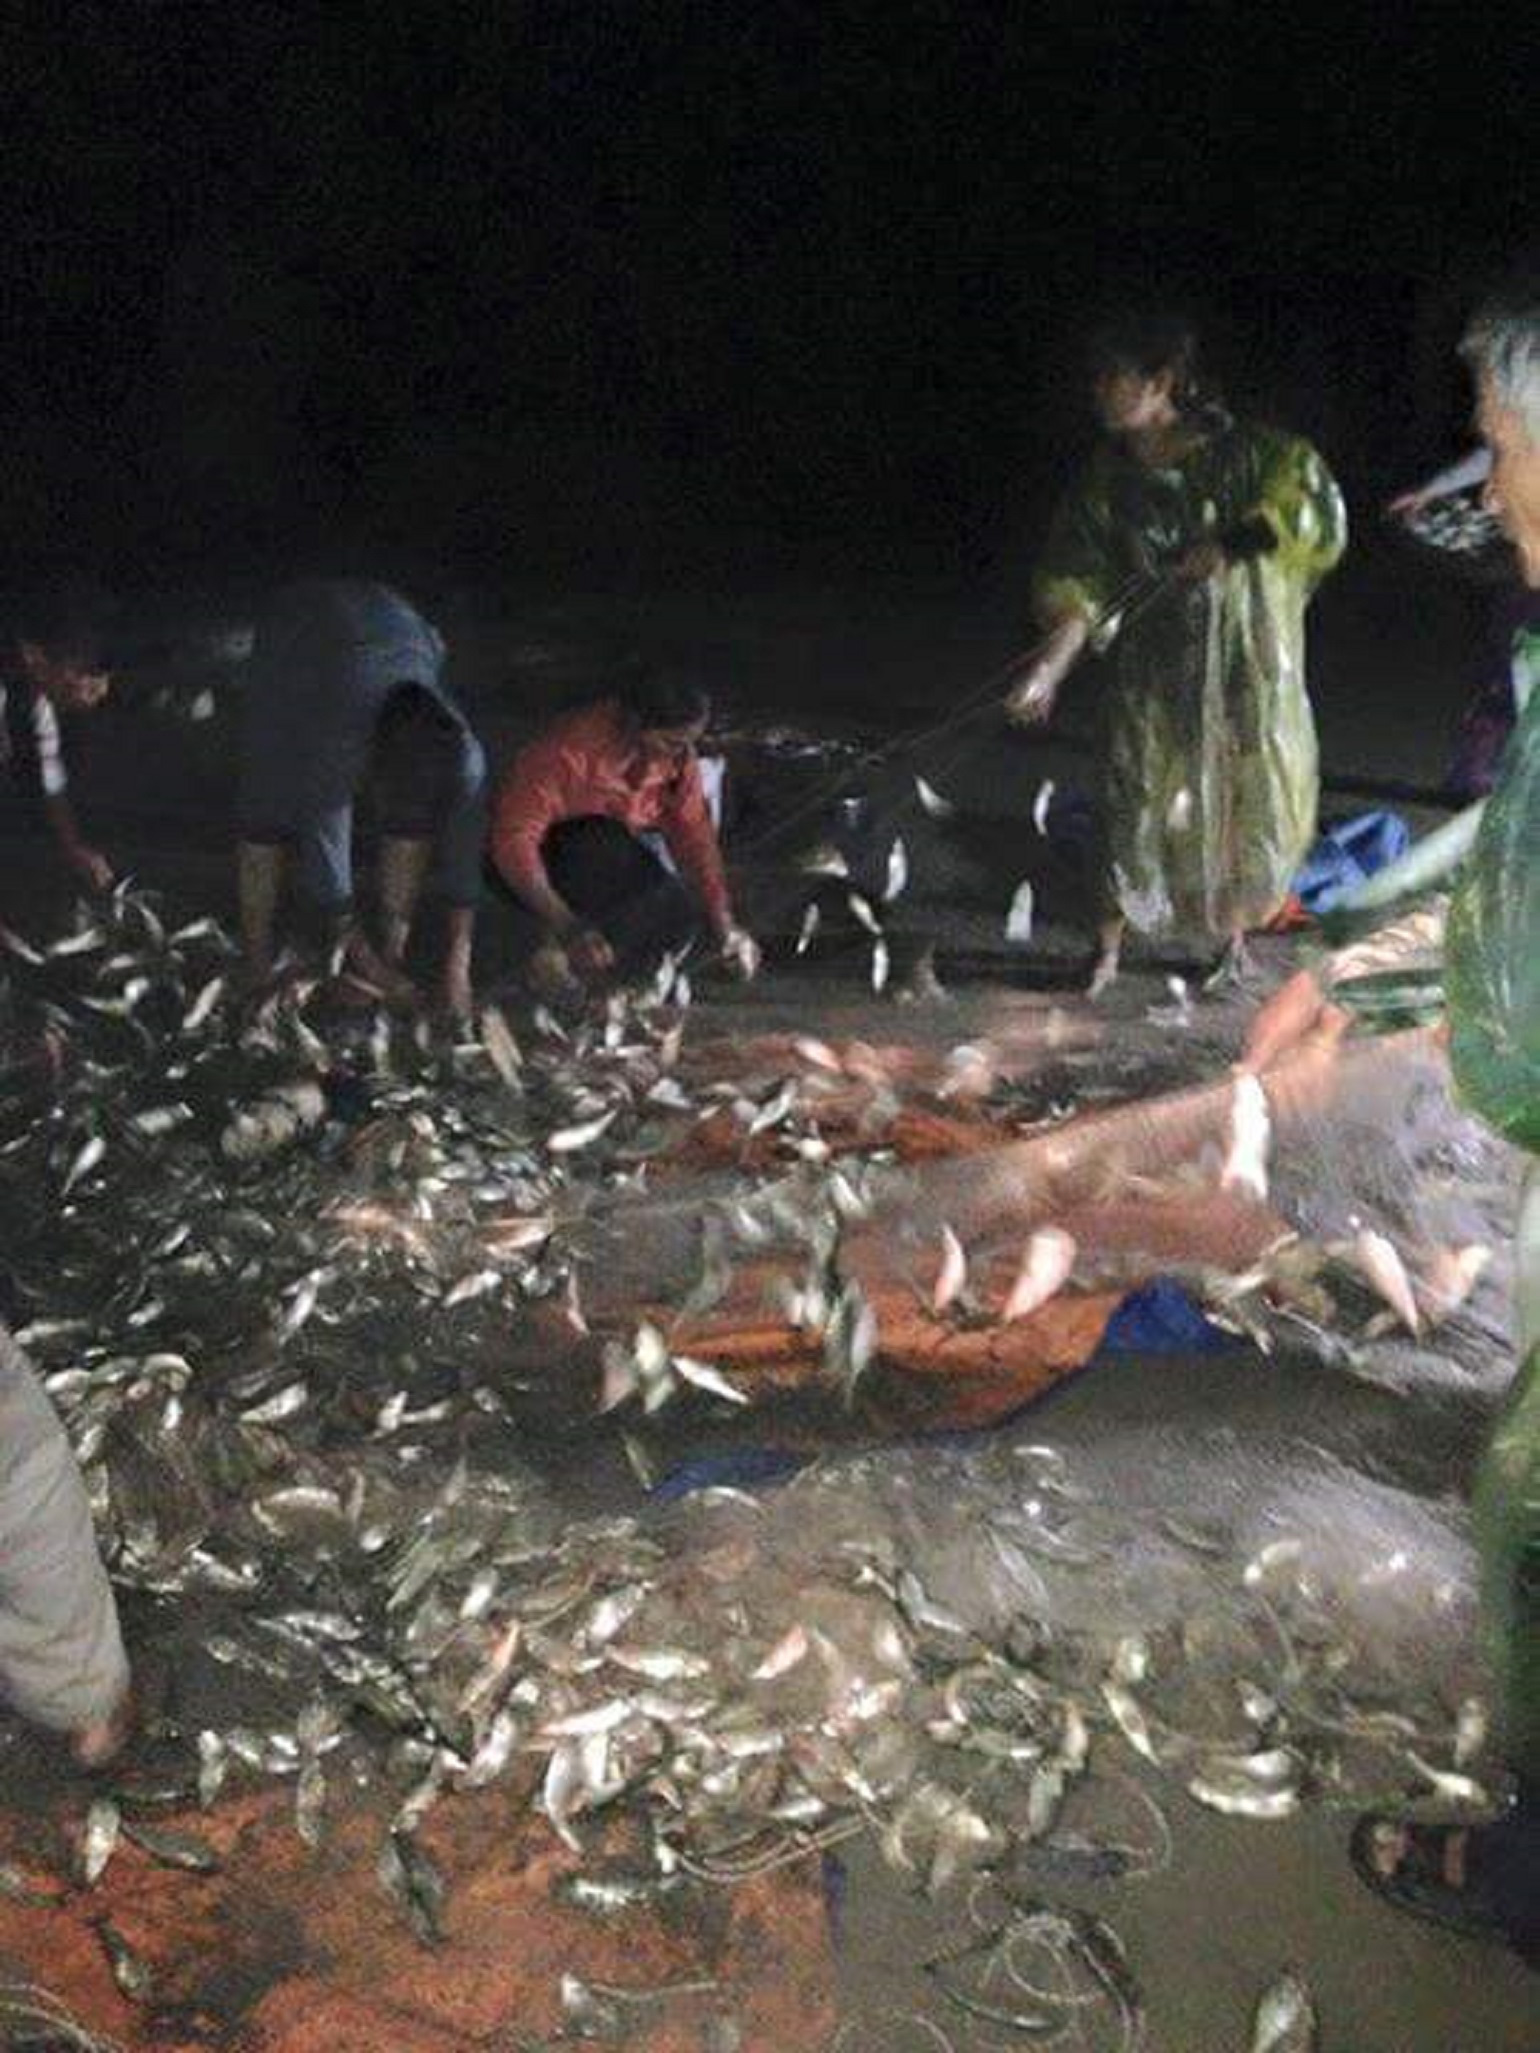 
Ngư dân Thừa Thiên Huế được mùa cá trích - Ảnh 4.